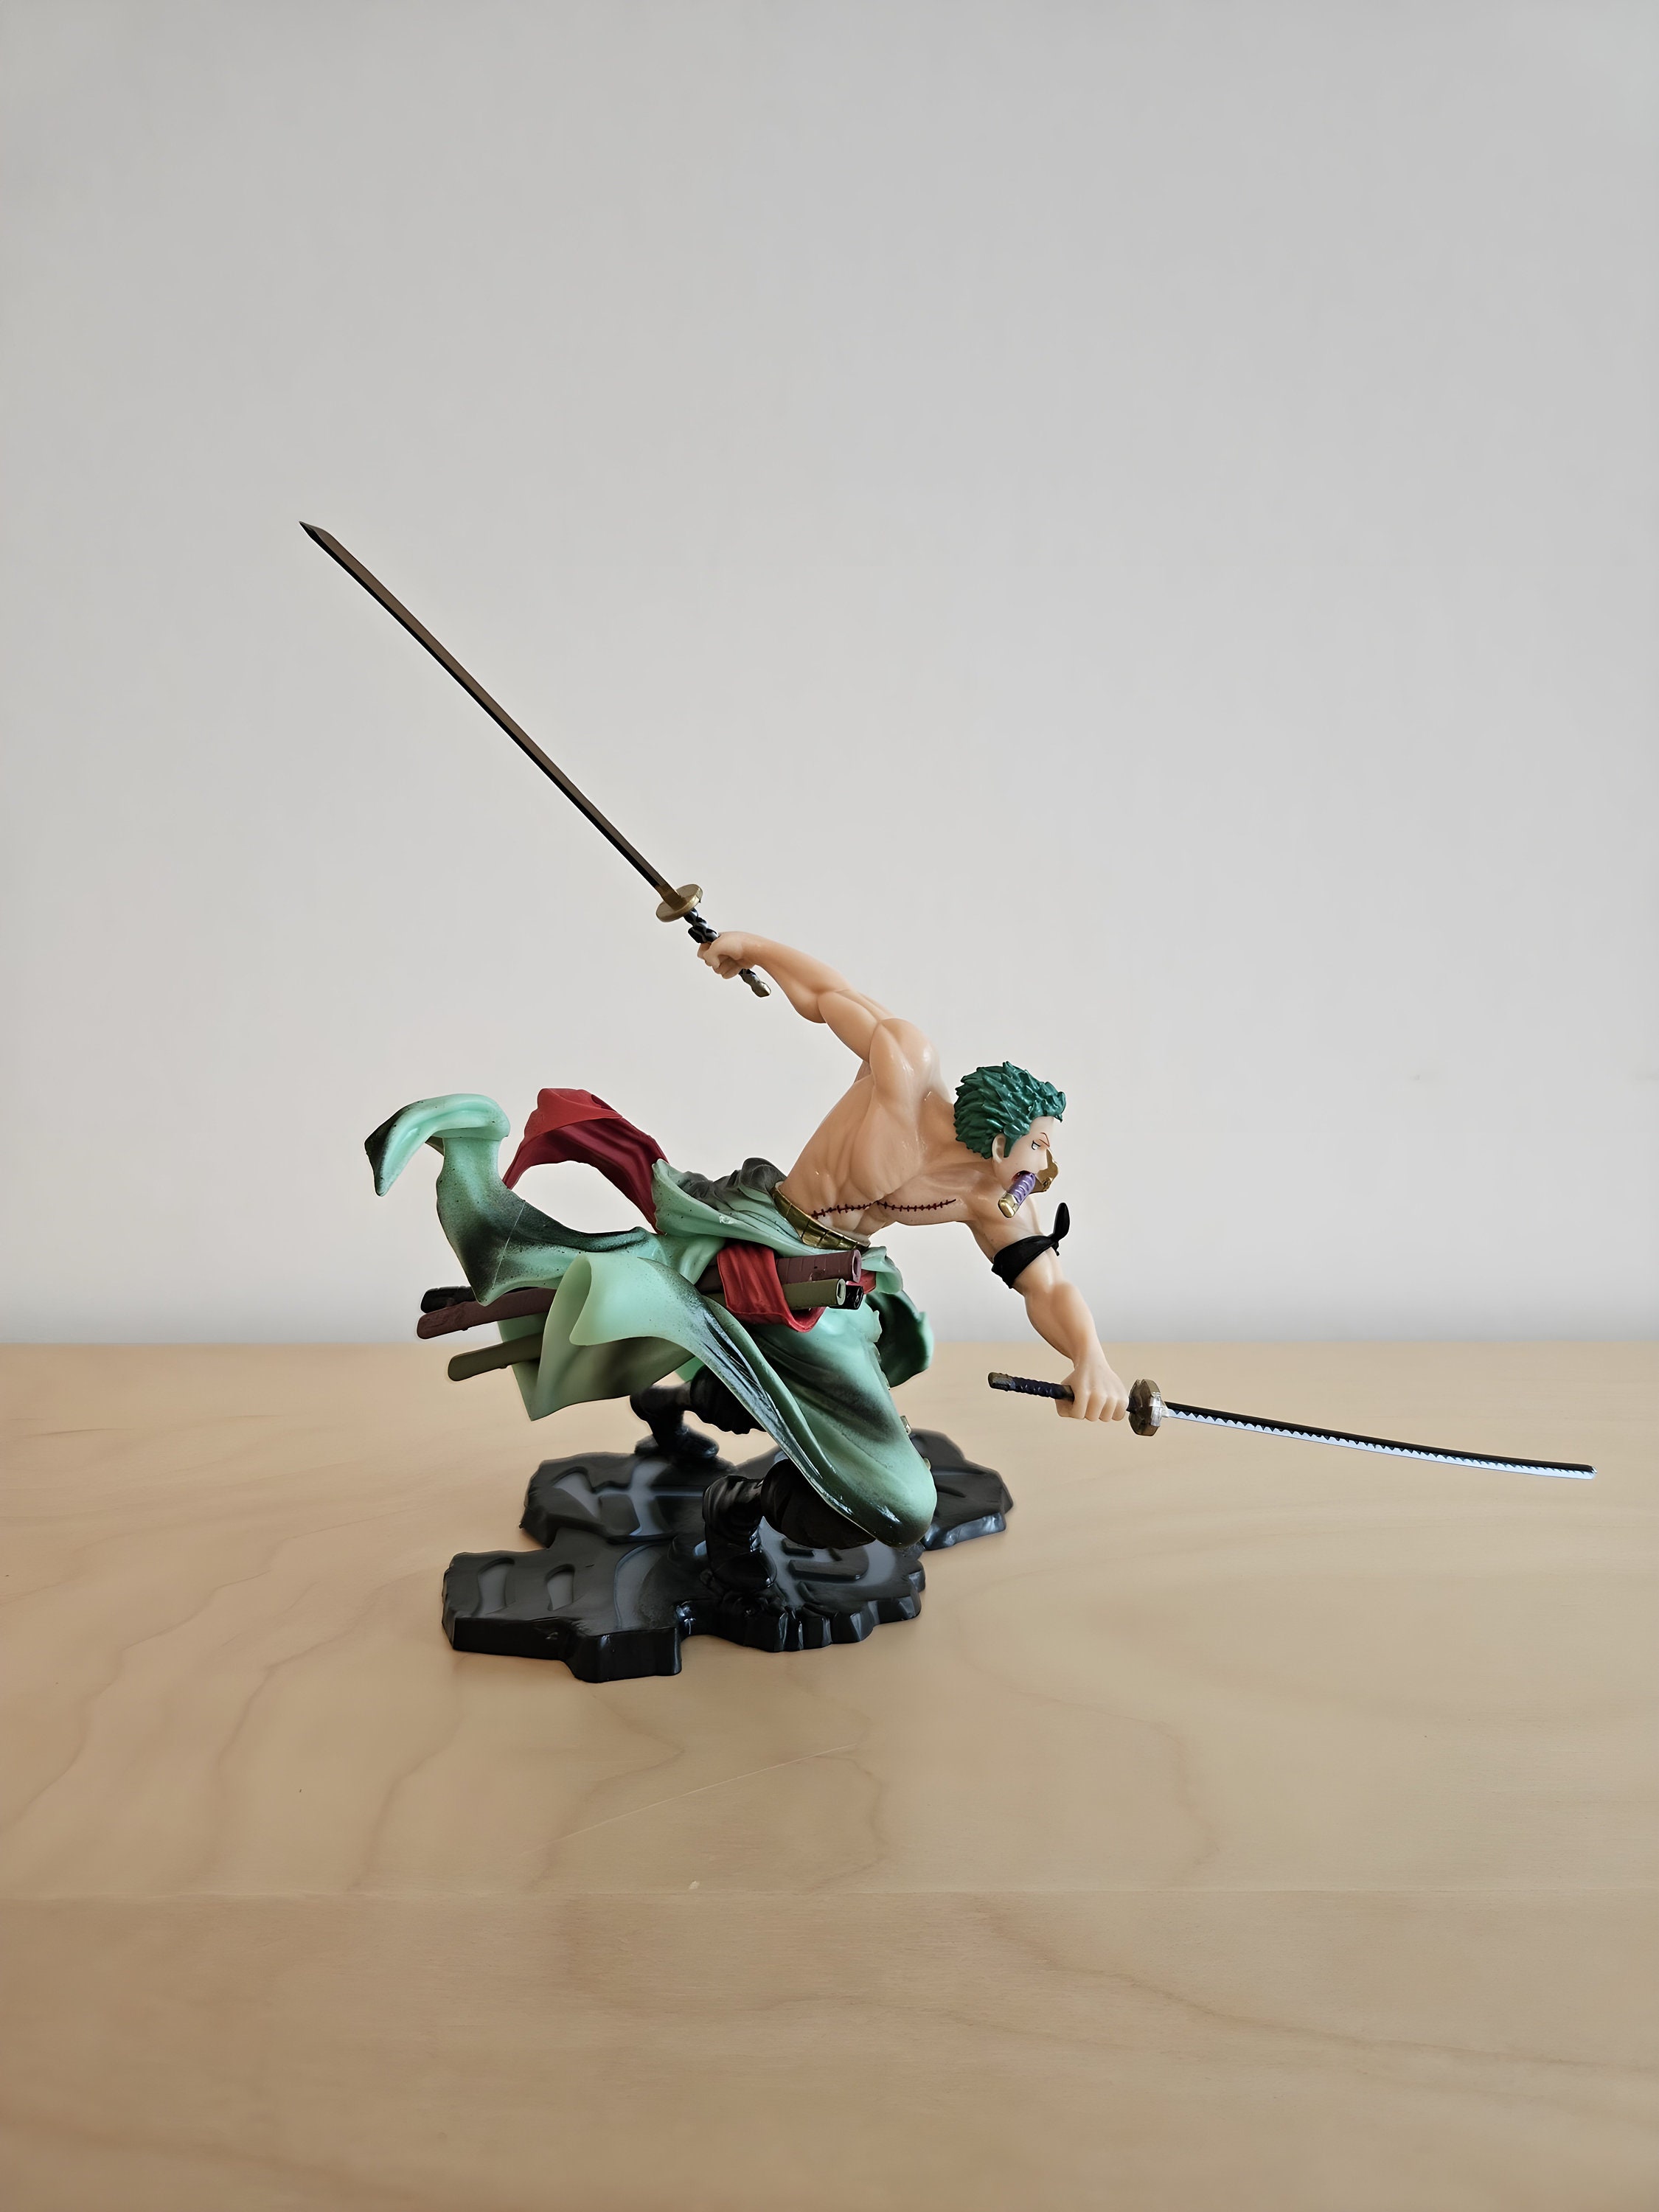 One Piece XXL figurine by Lorenor Zorro with 3 katana